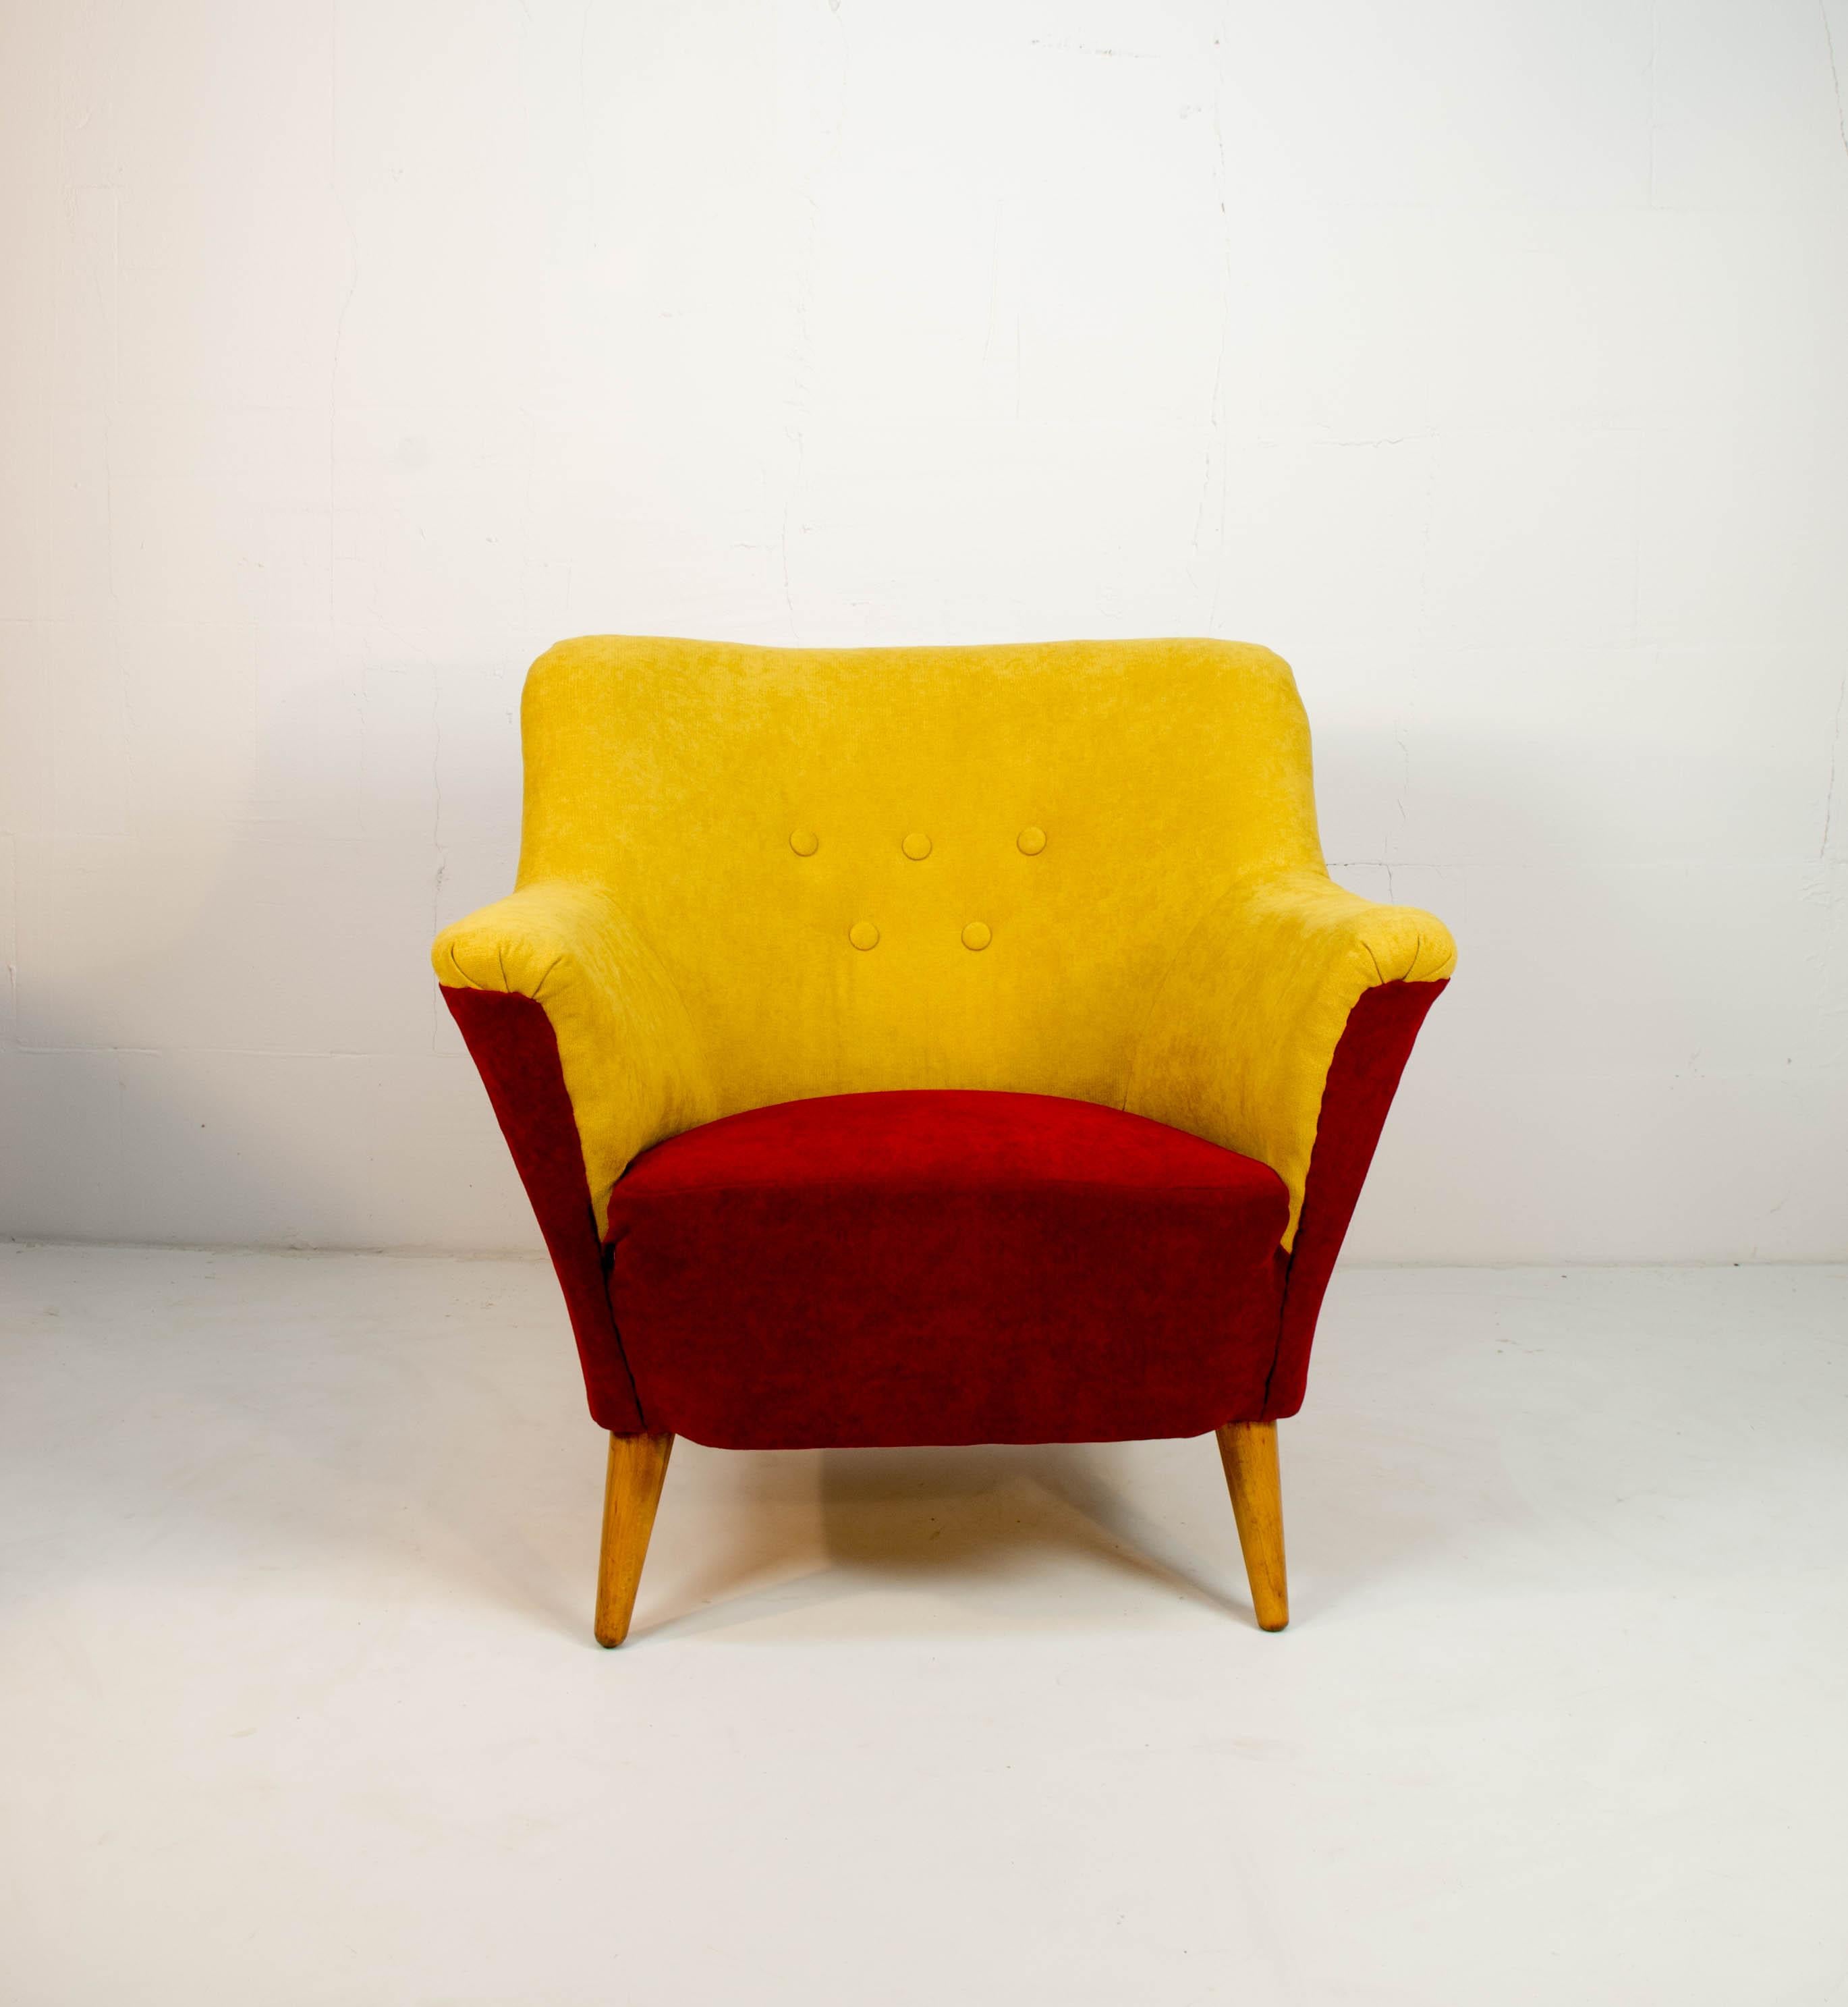 Vollständig restaurierter und neu gepolsterter Sessel aus den 1930er Jahren. Sehr bequem.